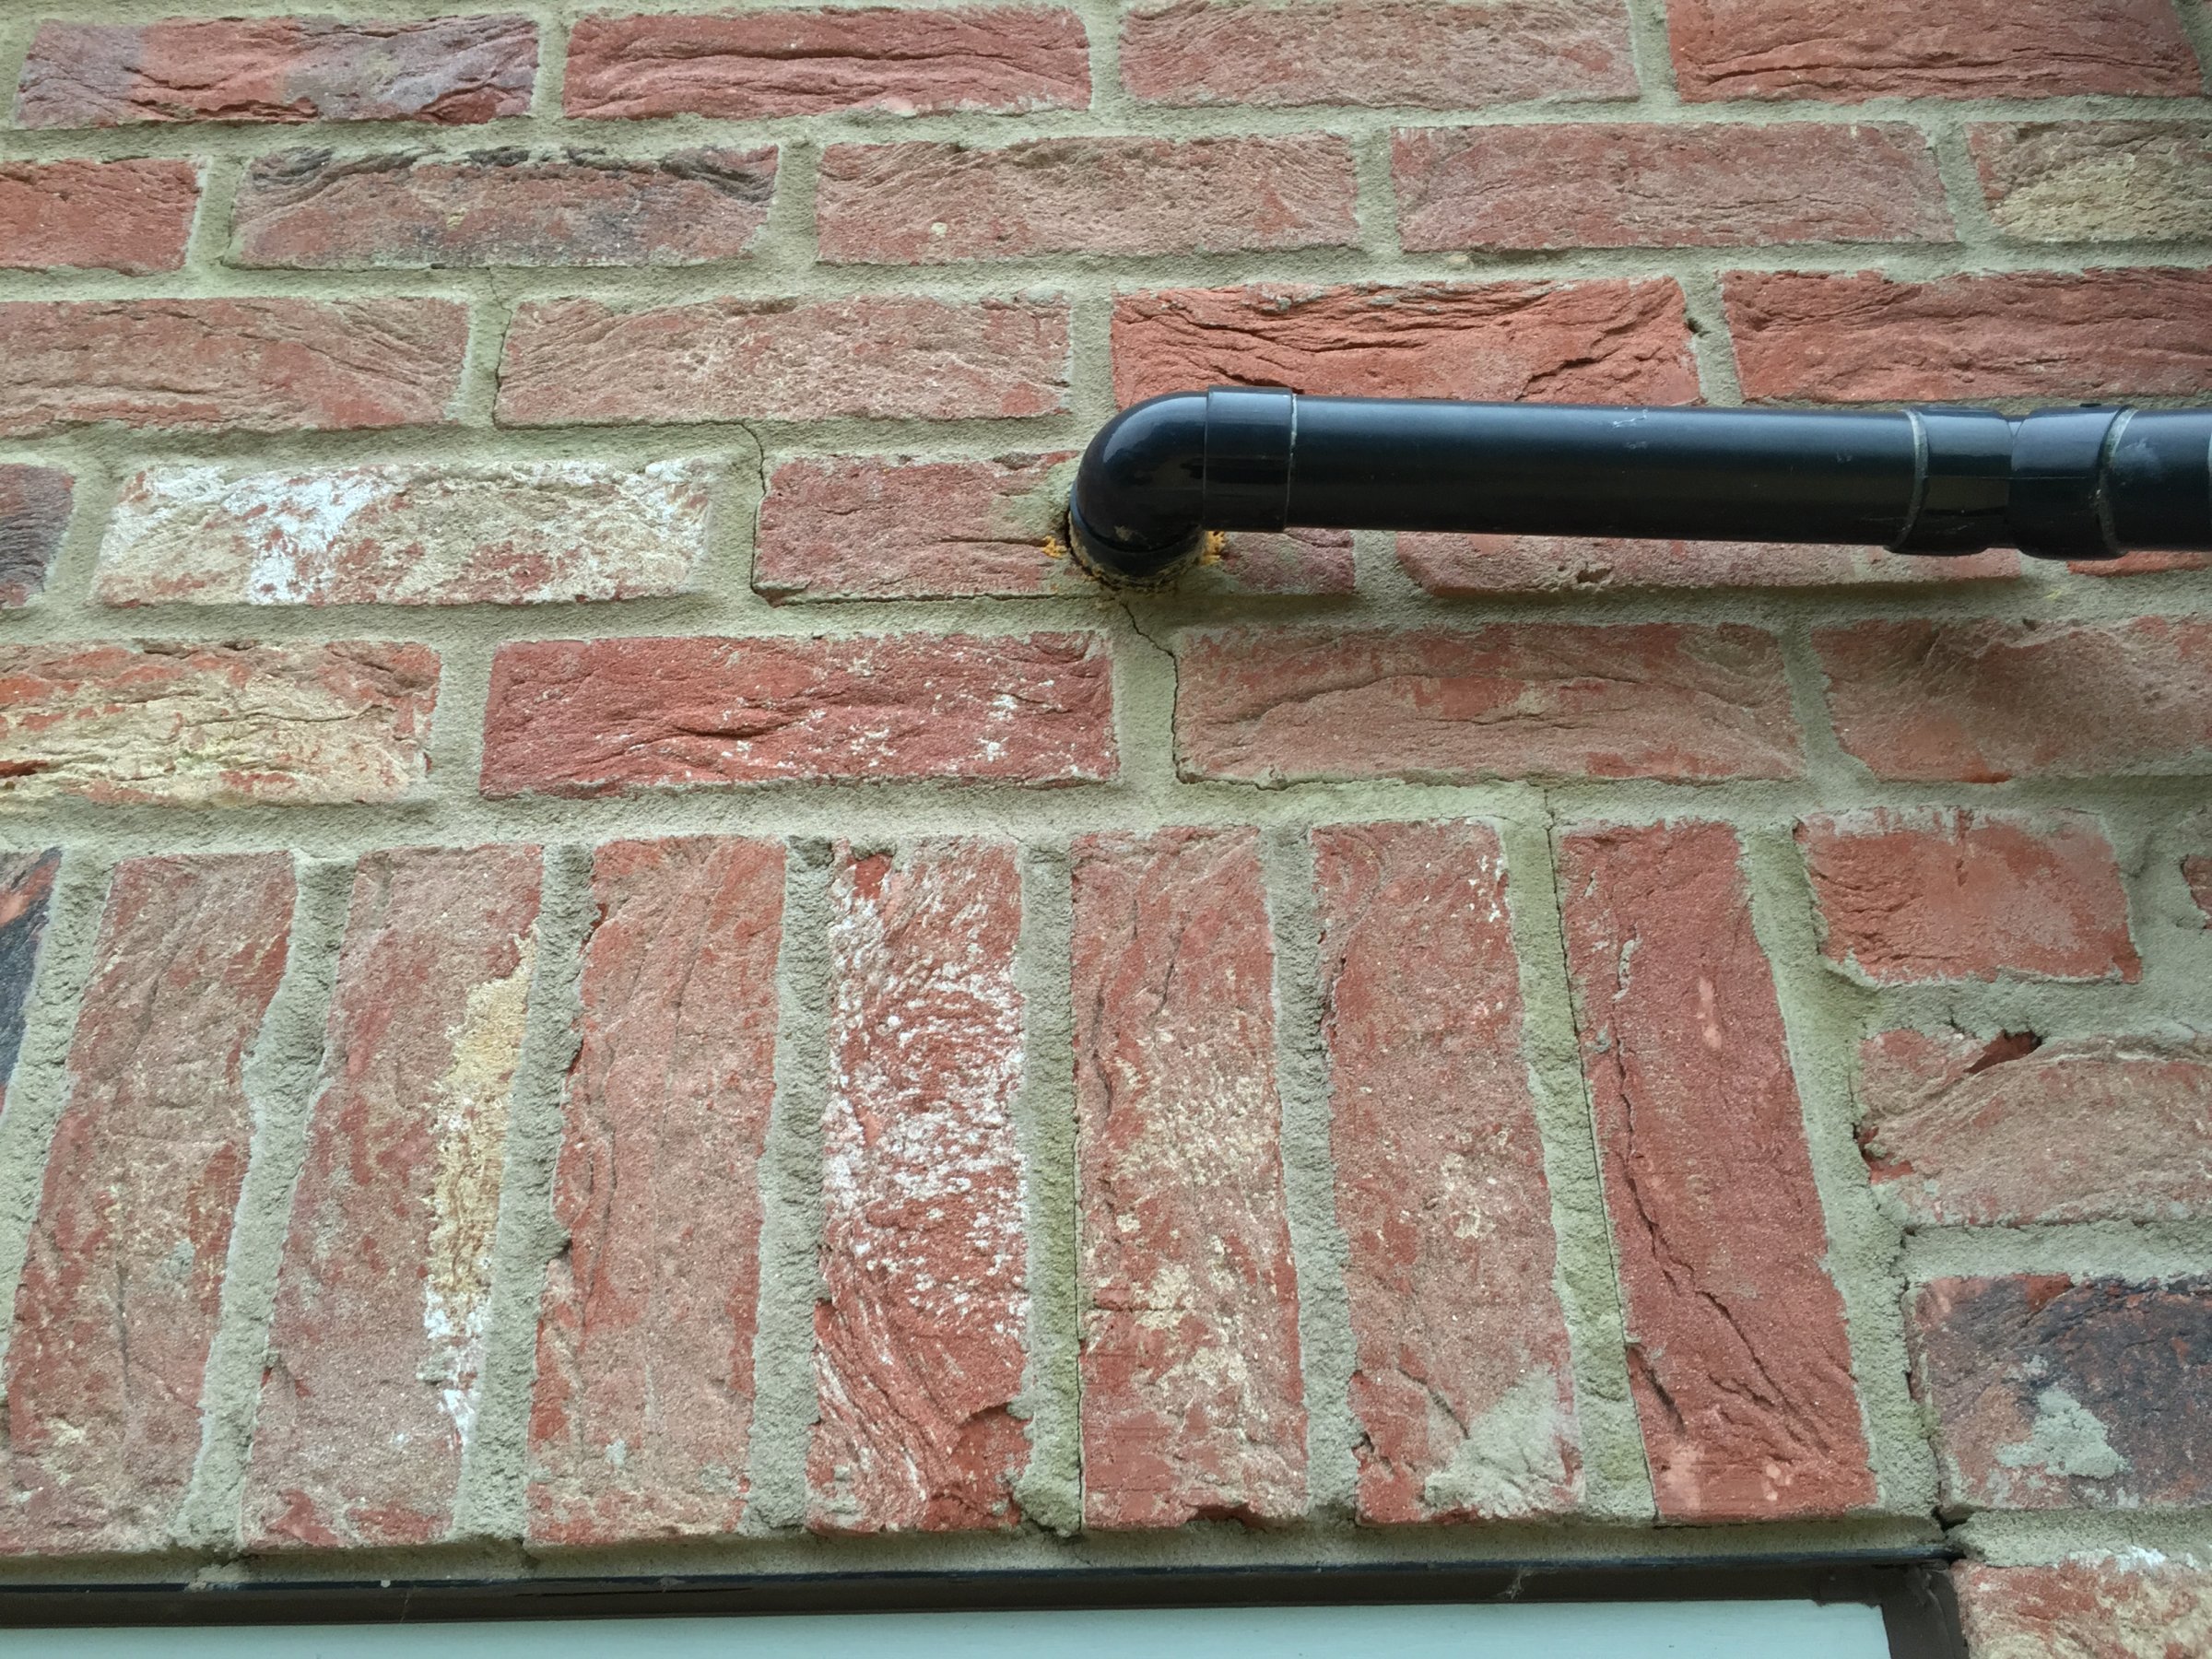 Crack in mortar above door